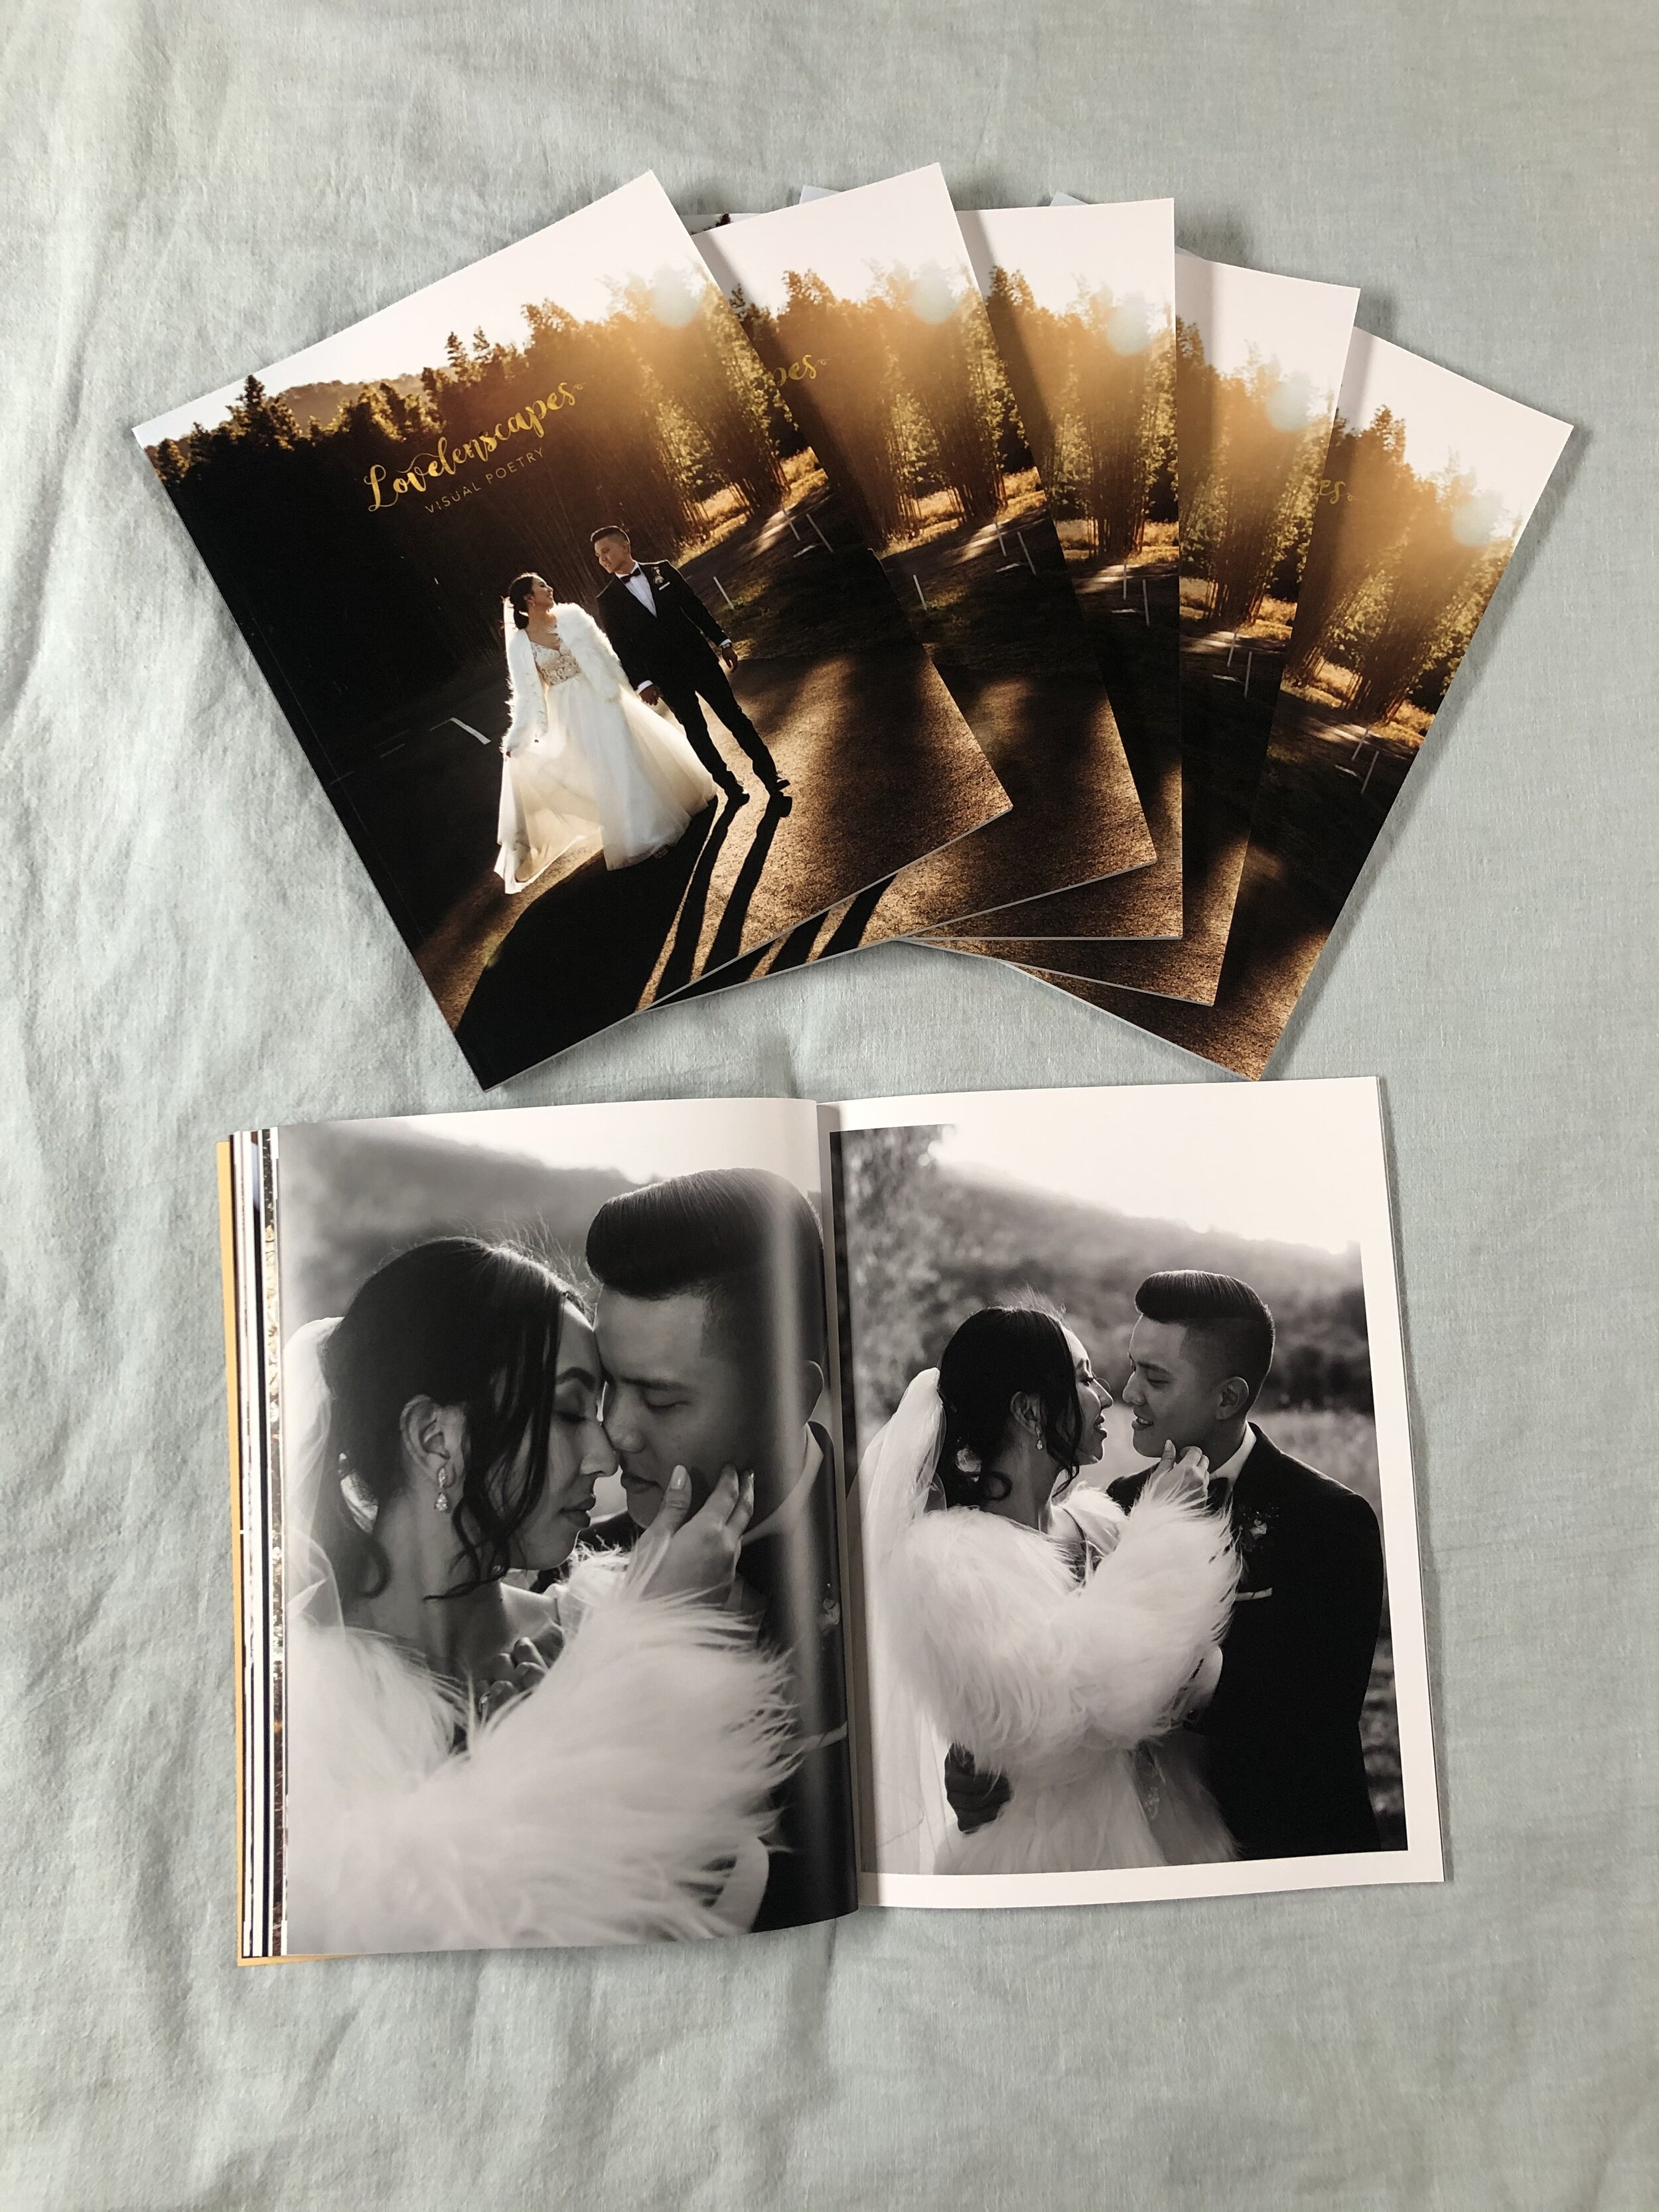 Lovelenscapes Photography • Brisbane Wedding Photographer • Luxury Wedding Magazine